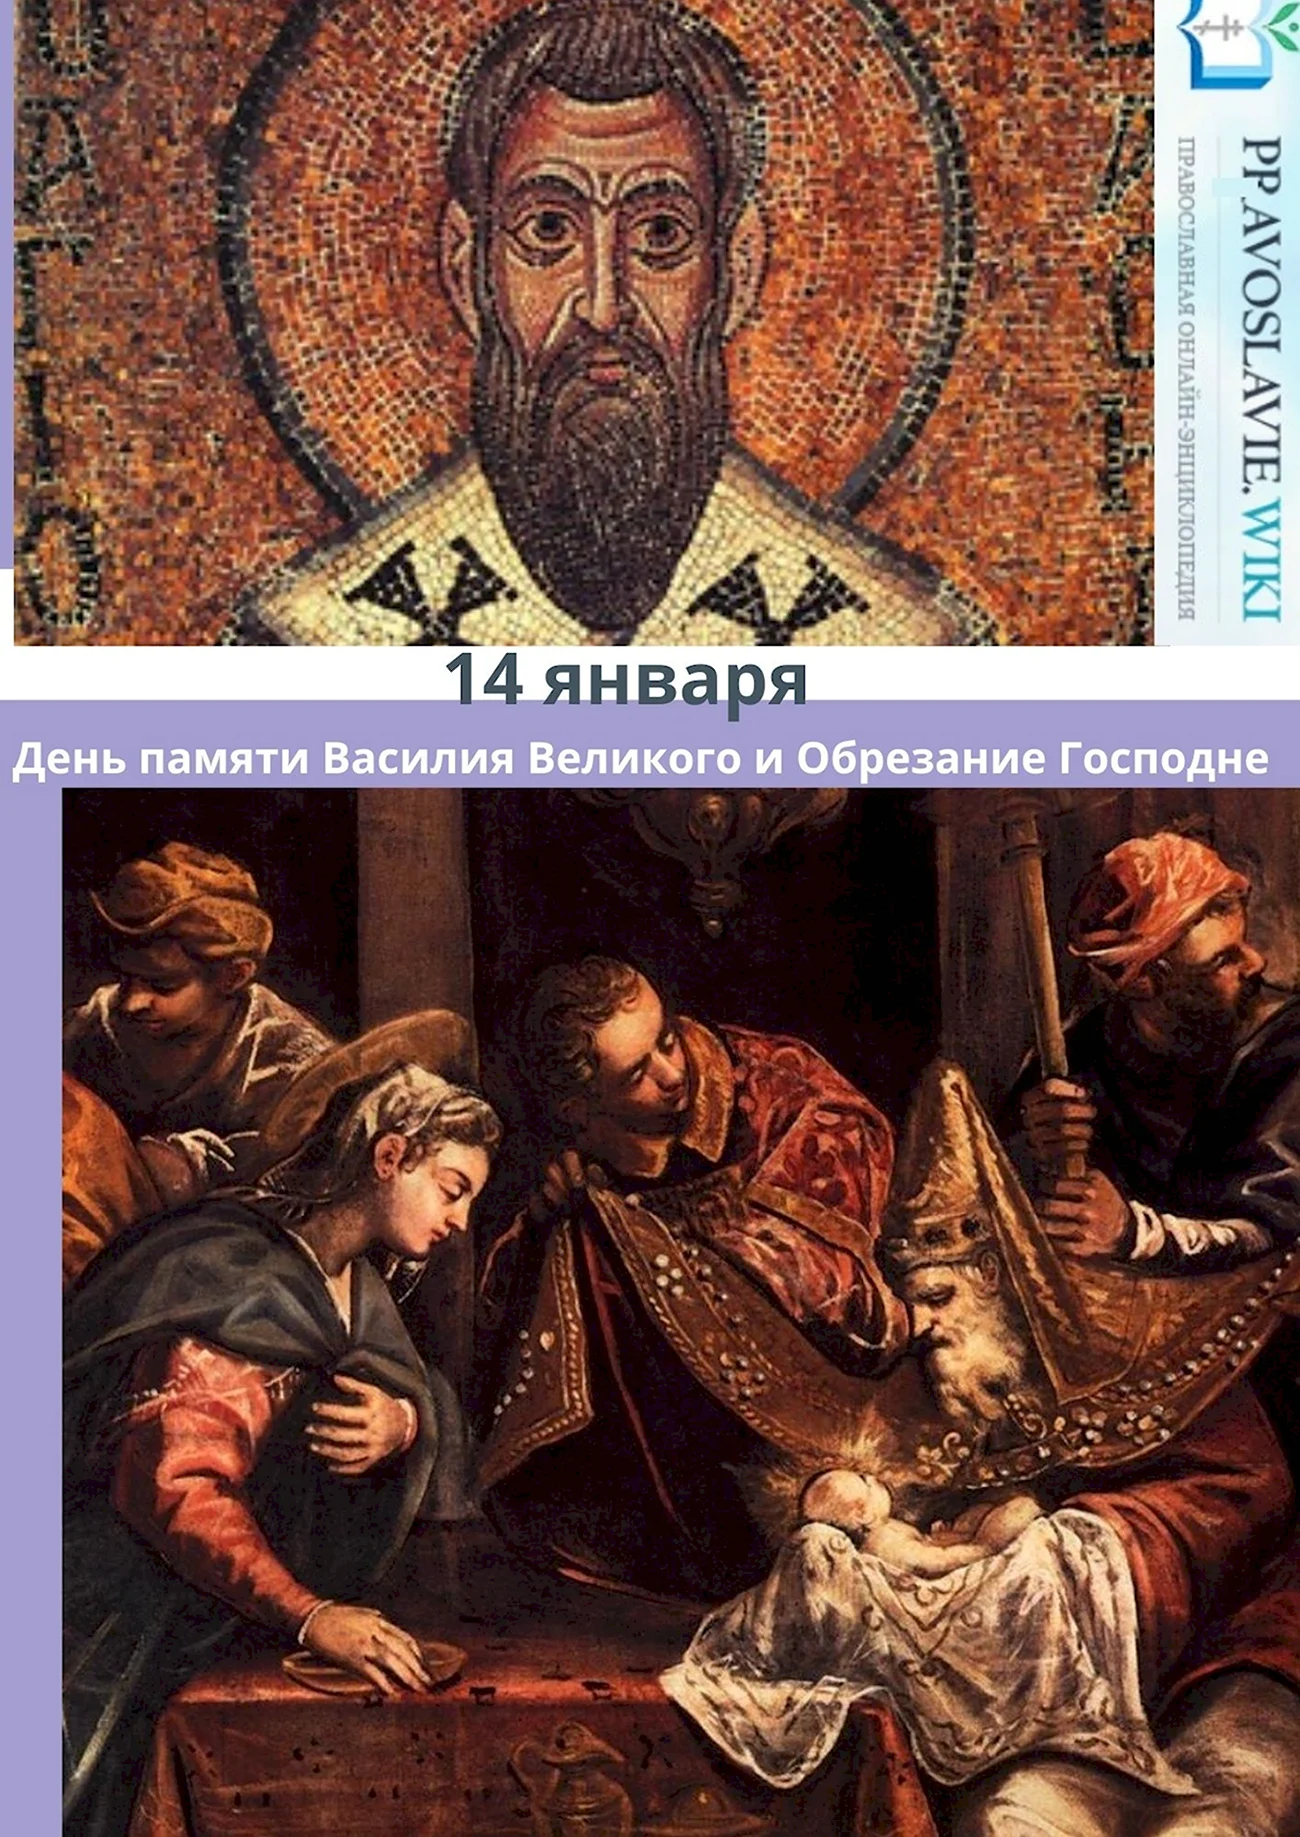 14 Января день Святого Василия и обрезания. Поздравление